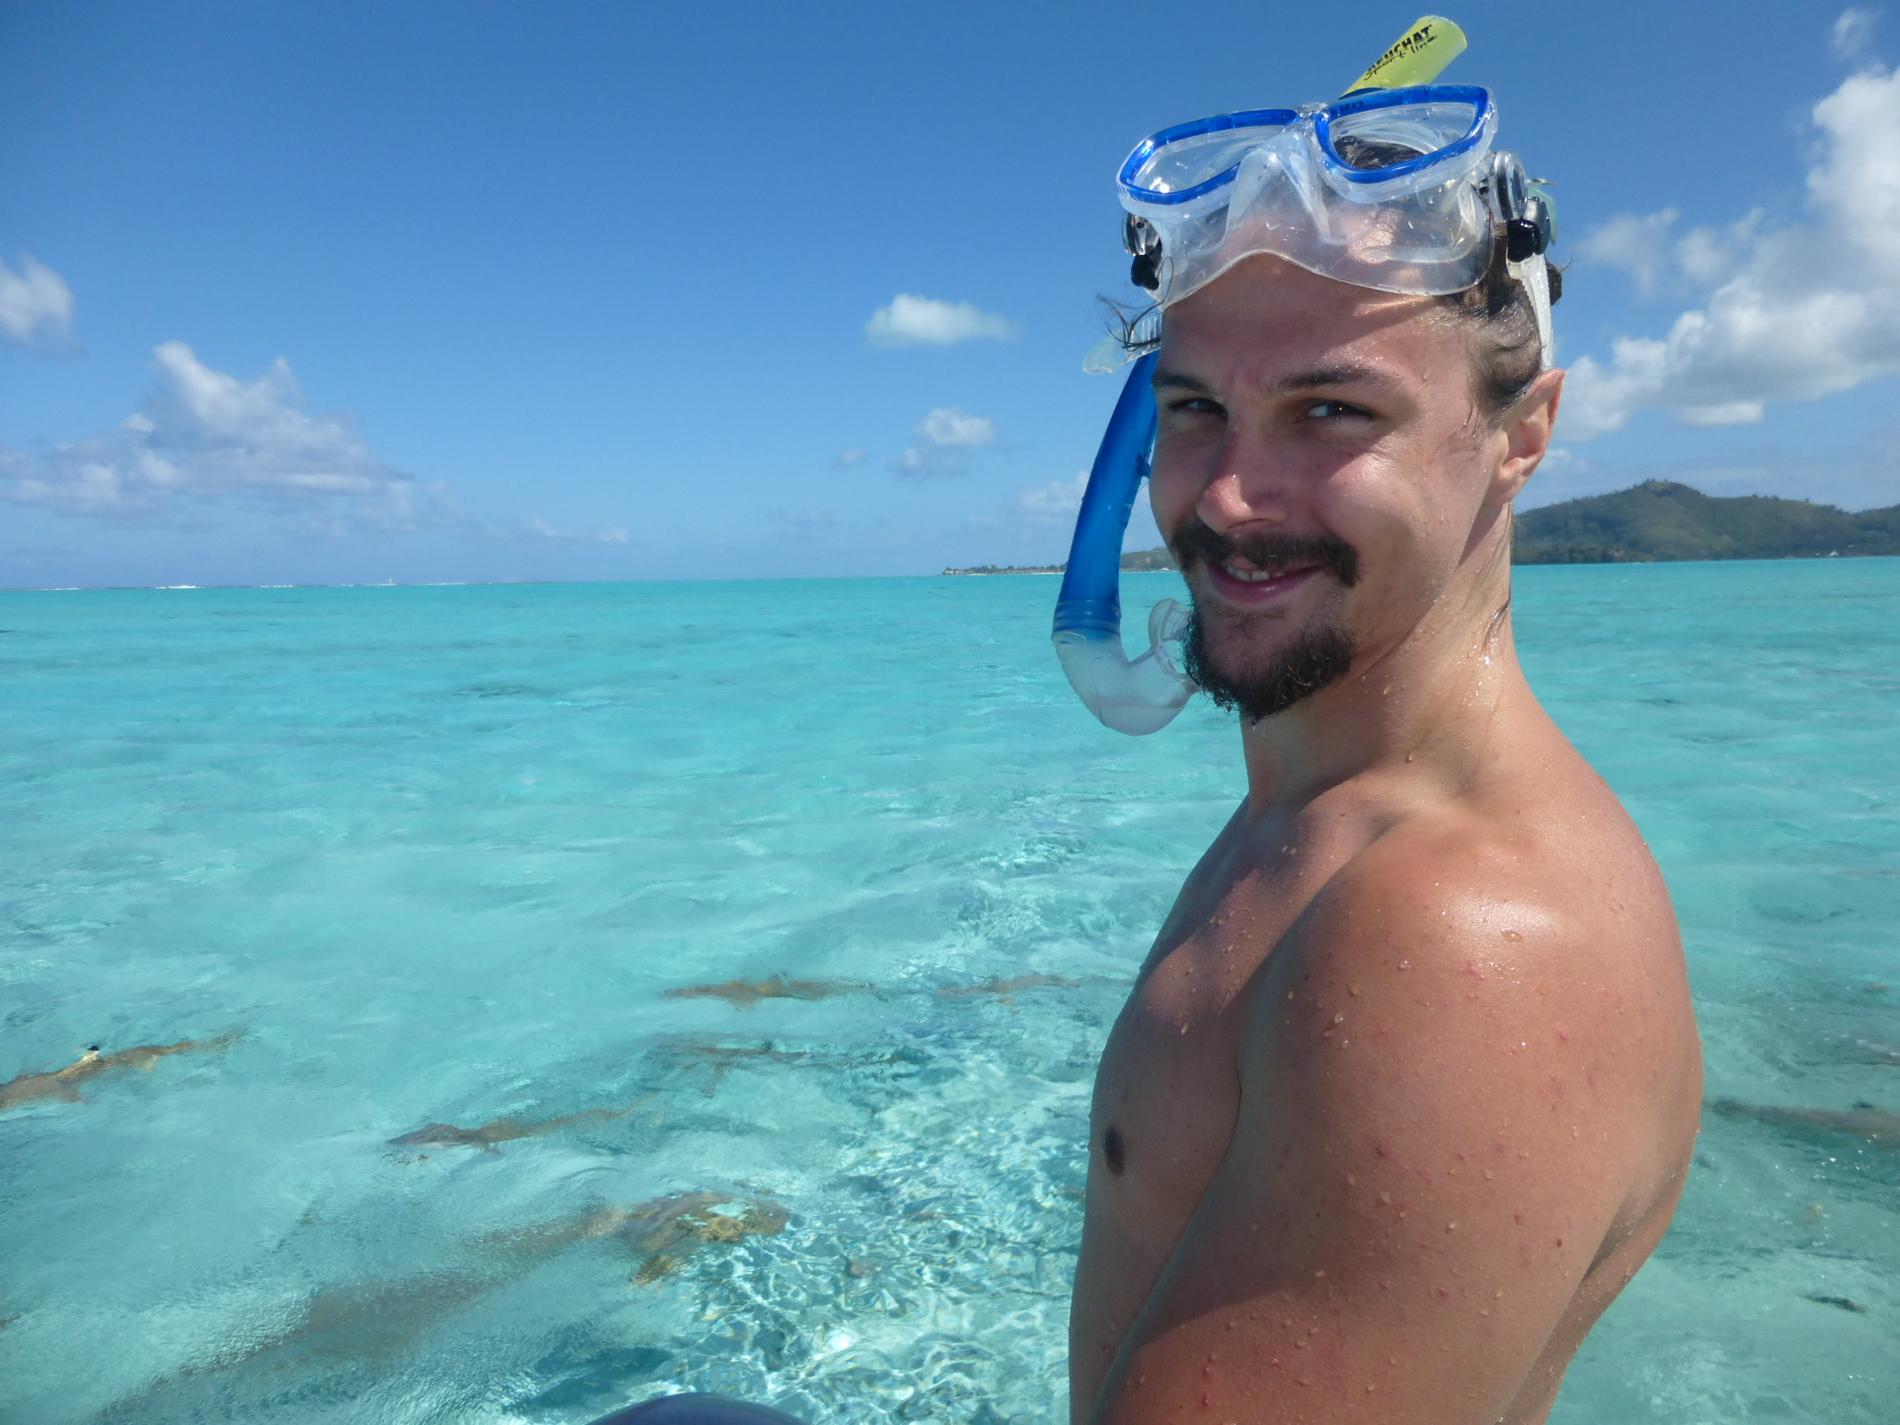 Erik är livrädd för hajar. Men på bröllopsresan i Bora Bora vågade han sig för första och sista gången ute i havet och snorklade – med just hajar.